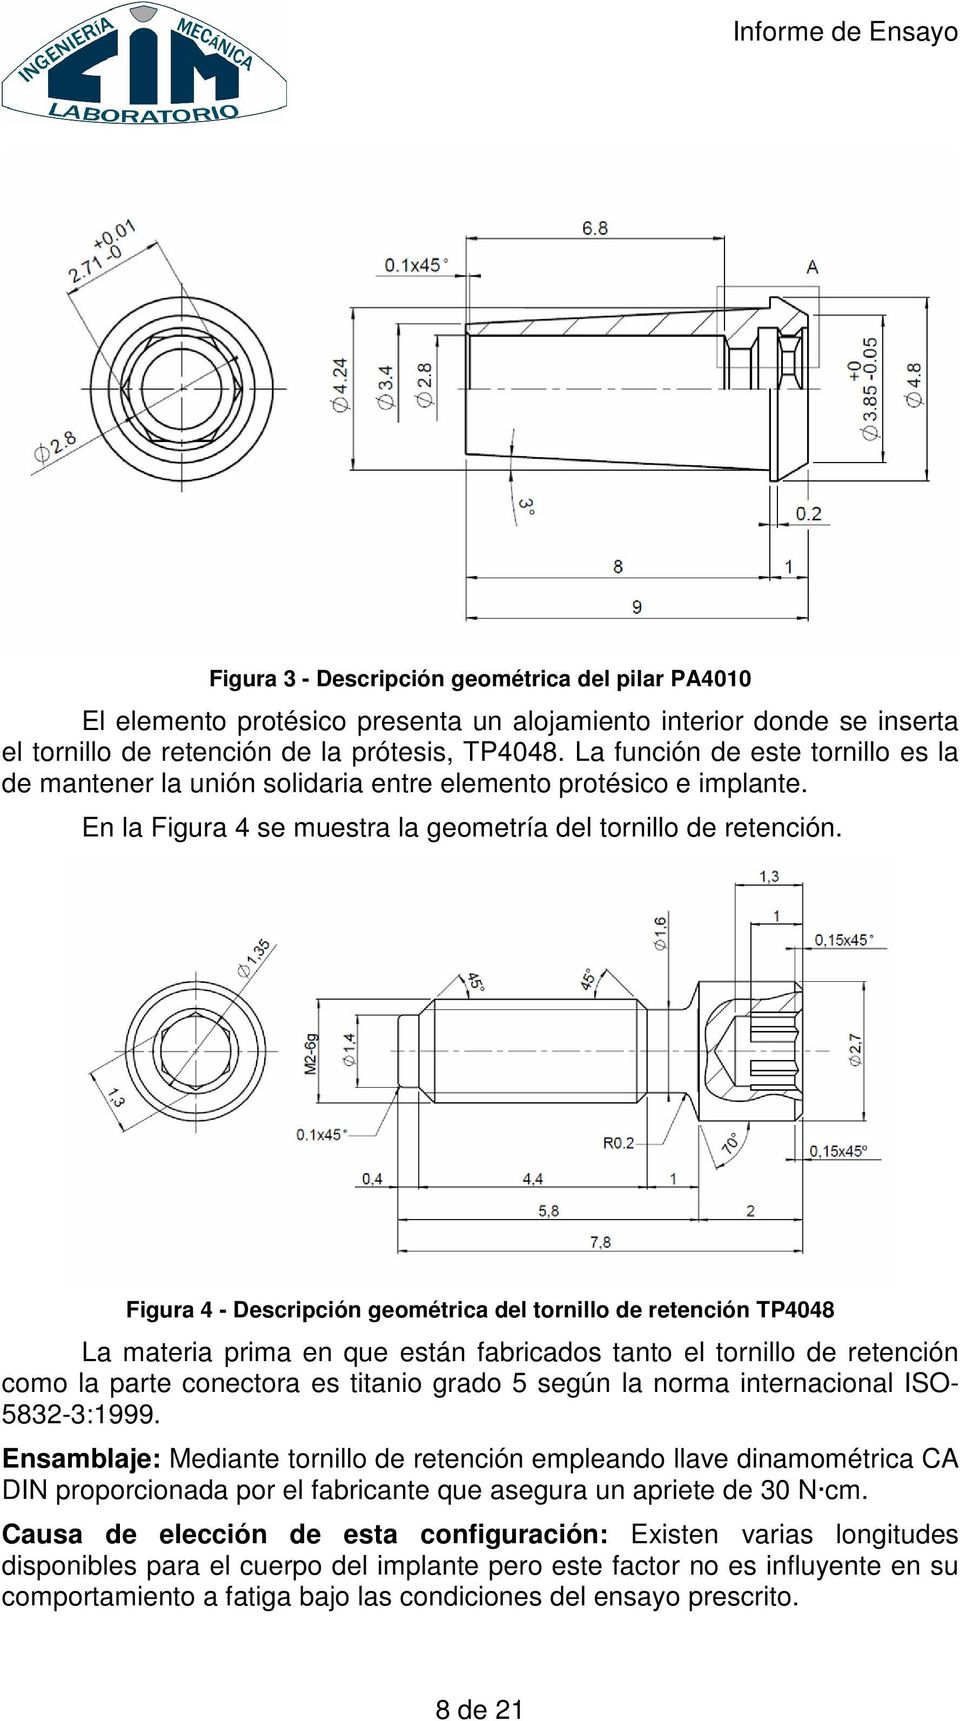 Figura 4 - Descripción geométrica del tornillo de retención TP4048 La materia prima en que están fabricados tanto el tornillo de retención como la parte conectora es titanio grado 5 según la norma